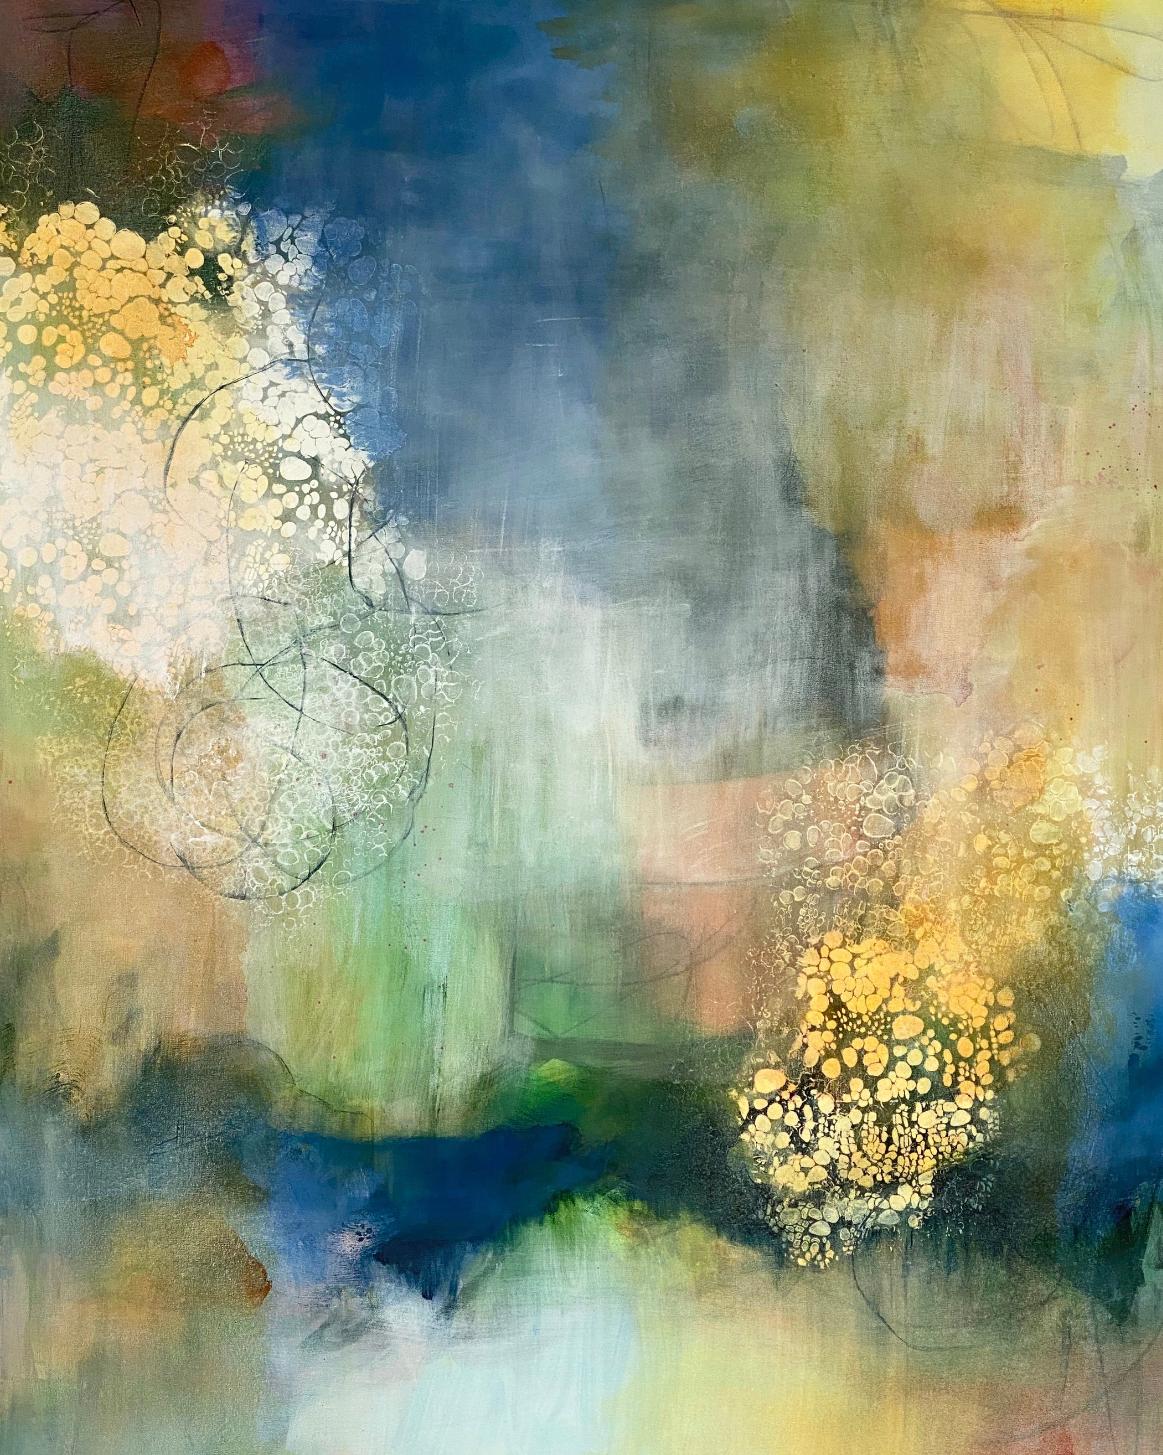 Miles to go 1, zeitgenössische Landschaft, Herbstfarben, gelb, orange, grün, bl (Abstrakter Impressionismus), Painting, von Juanita Bellavance 